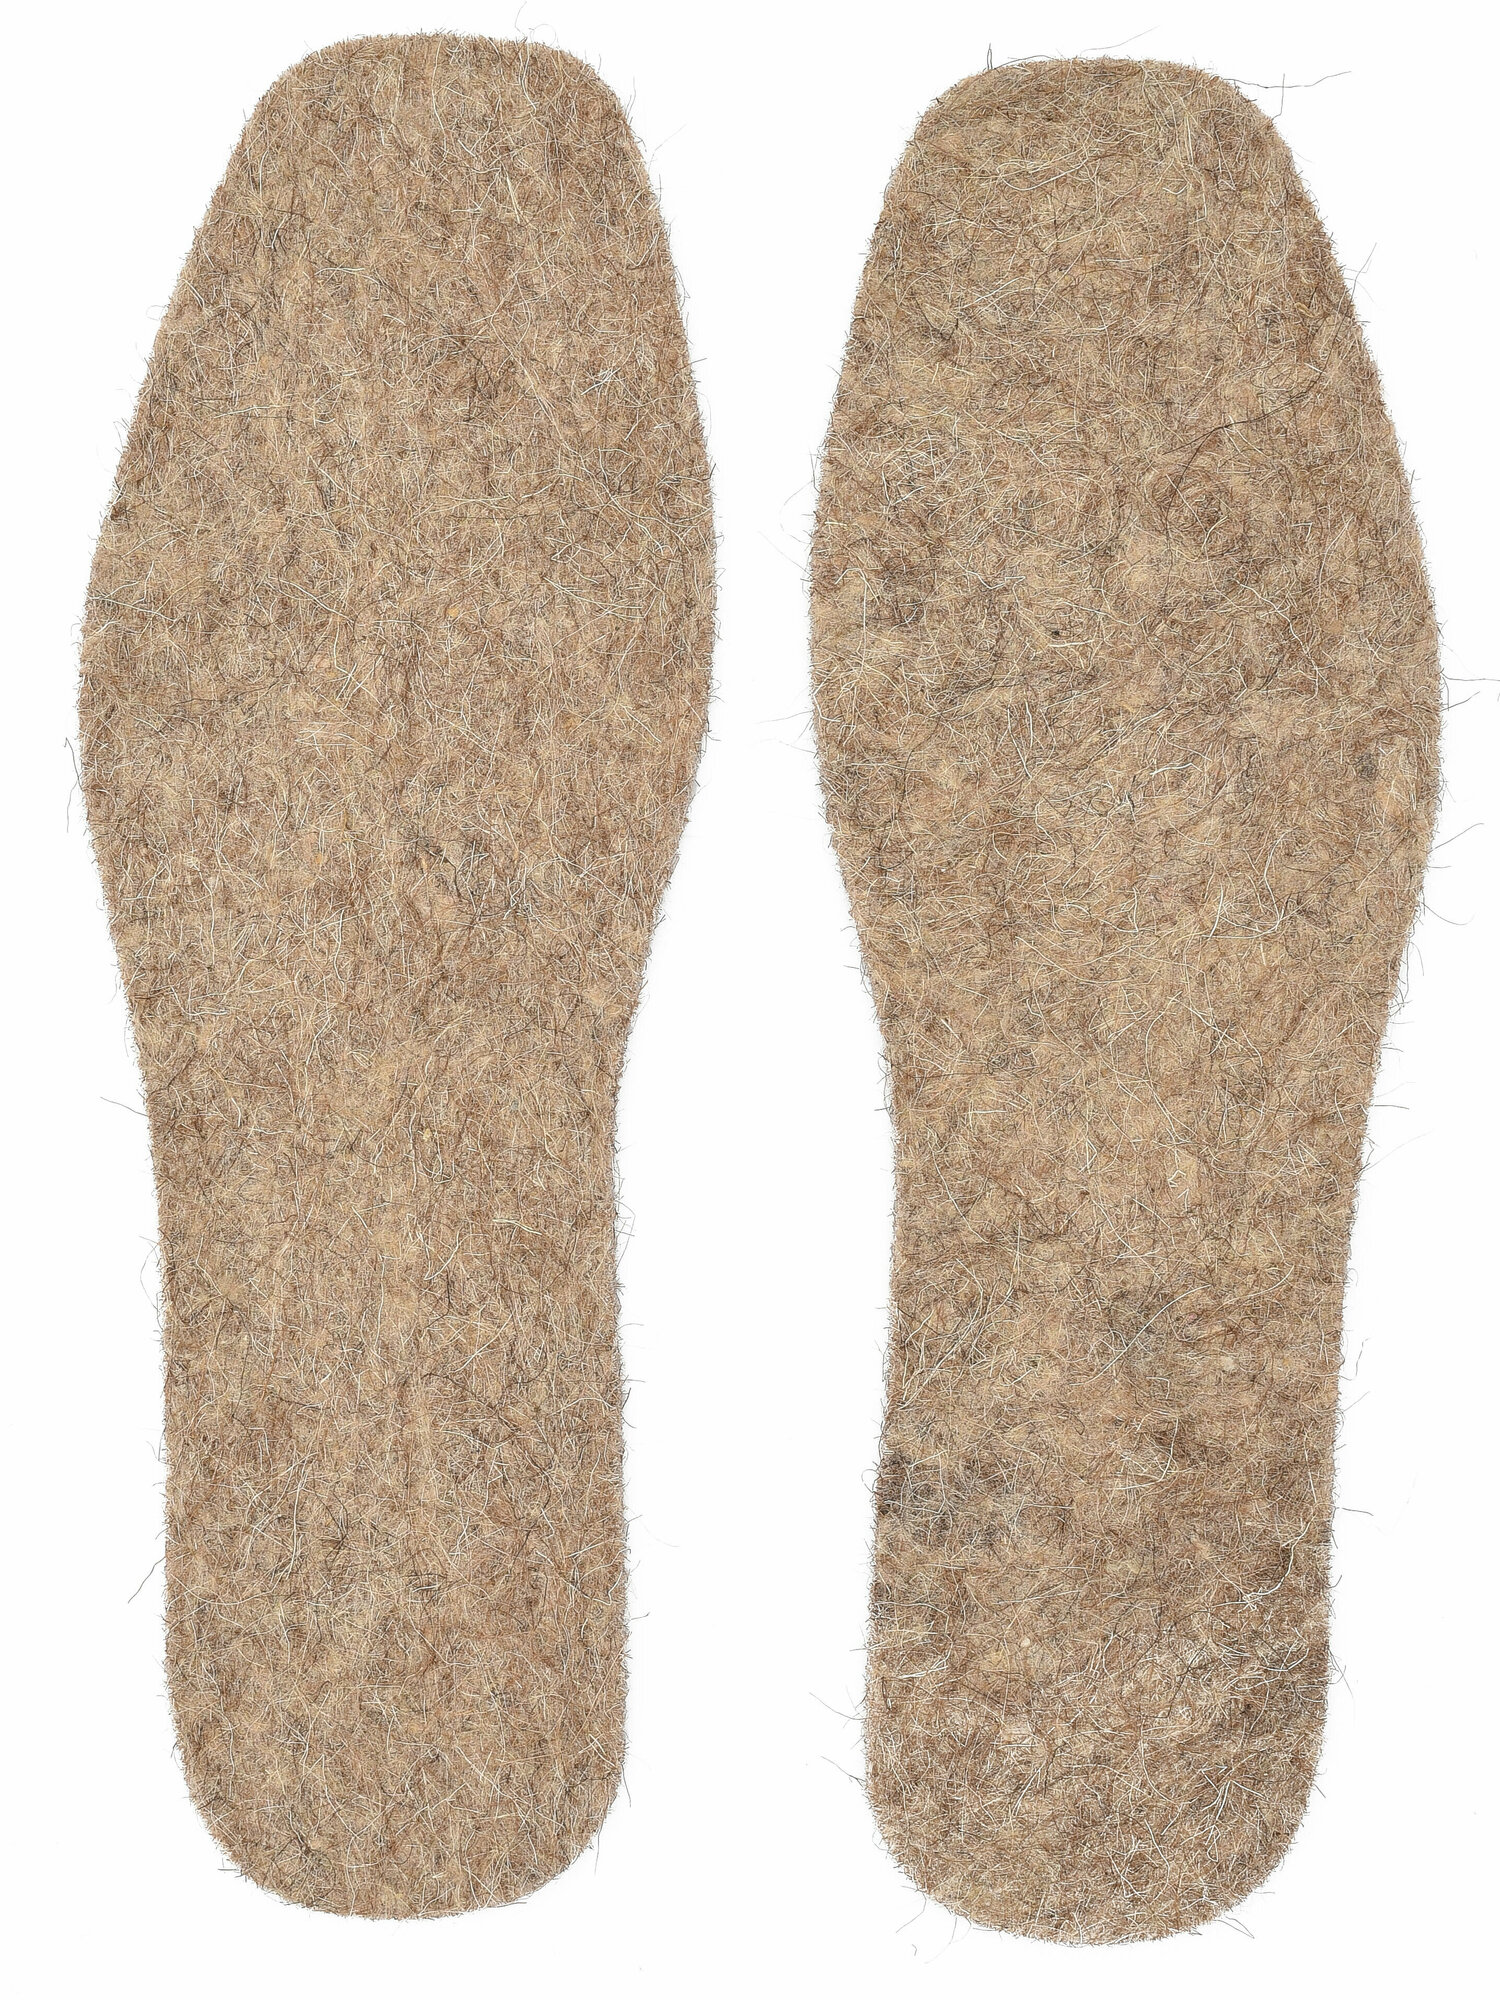 Стельки войлочные толстые для обуви, теплые, зимние (2 пары 42-го размера)